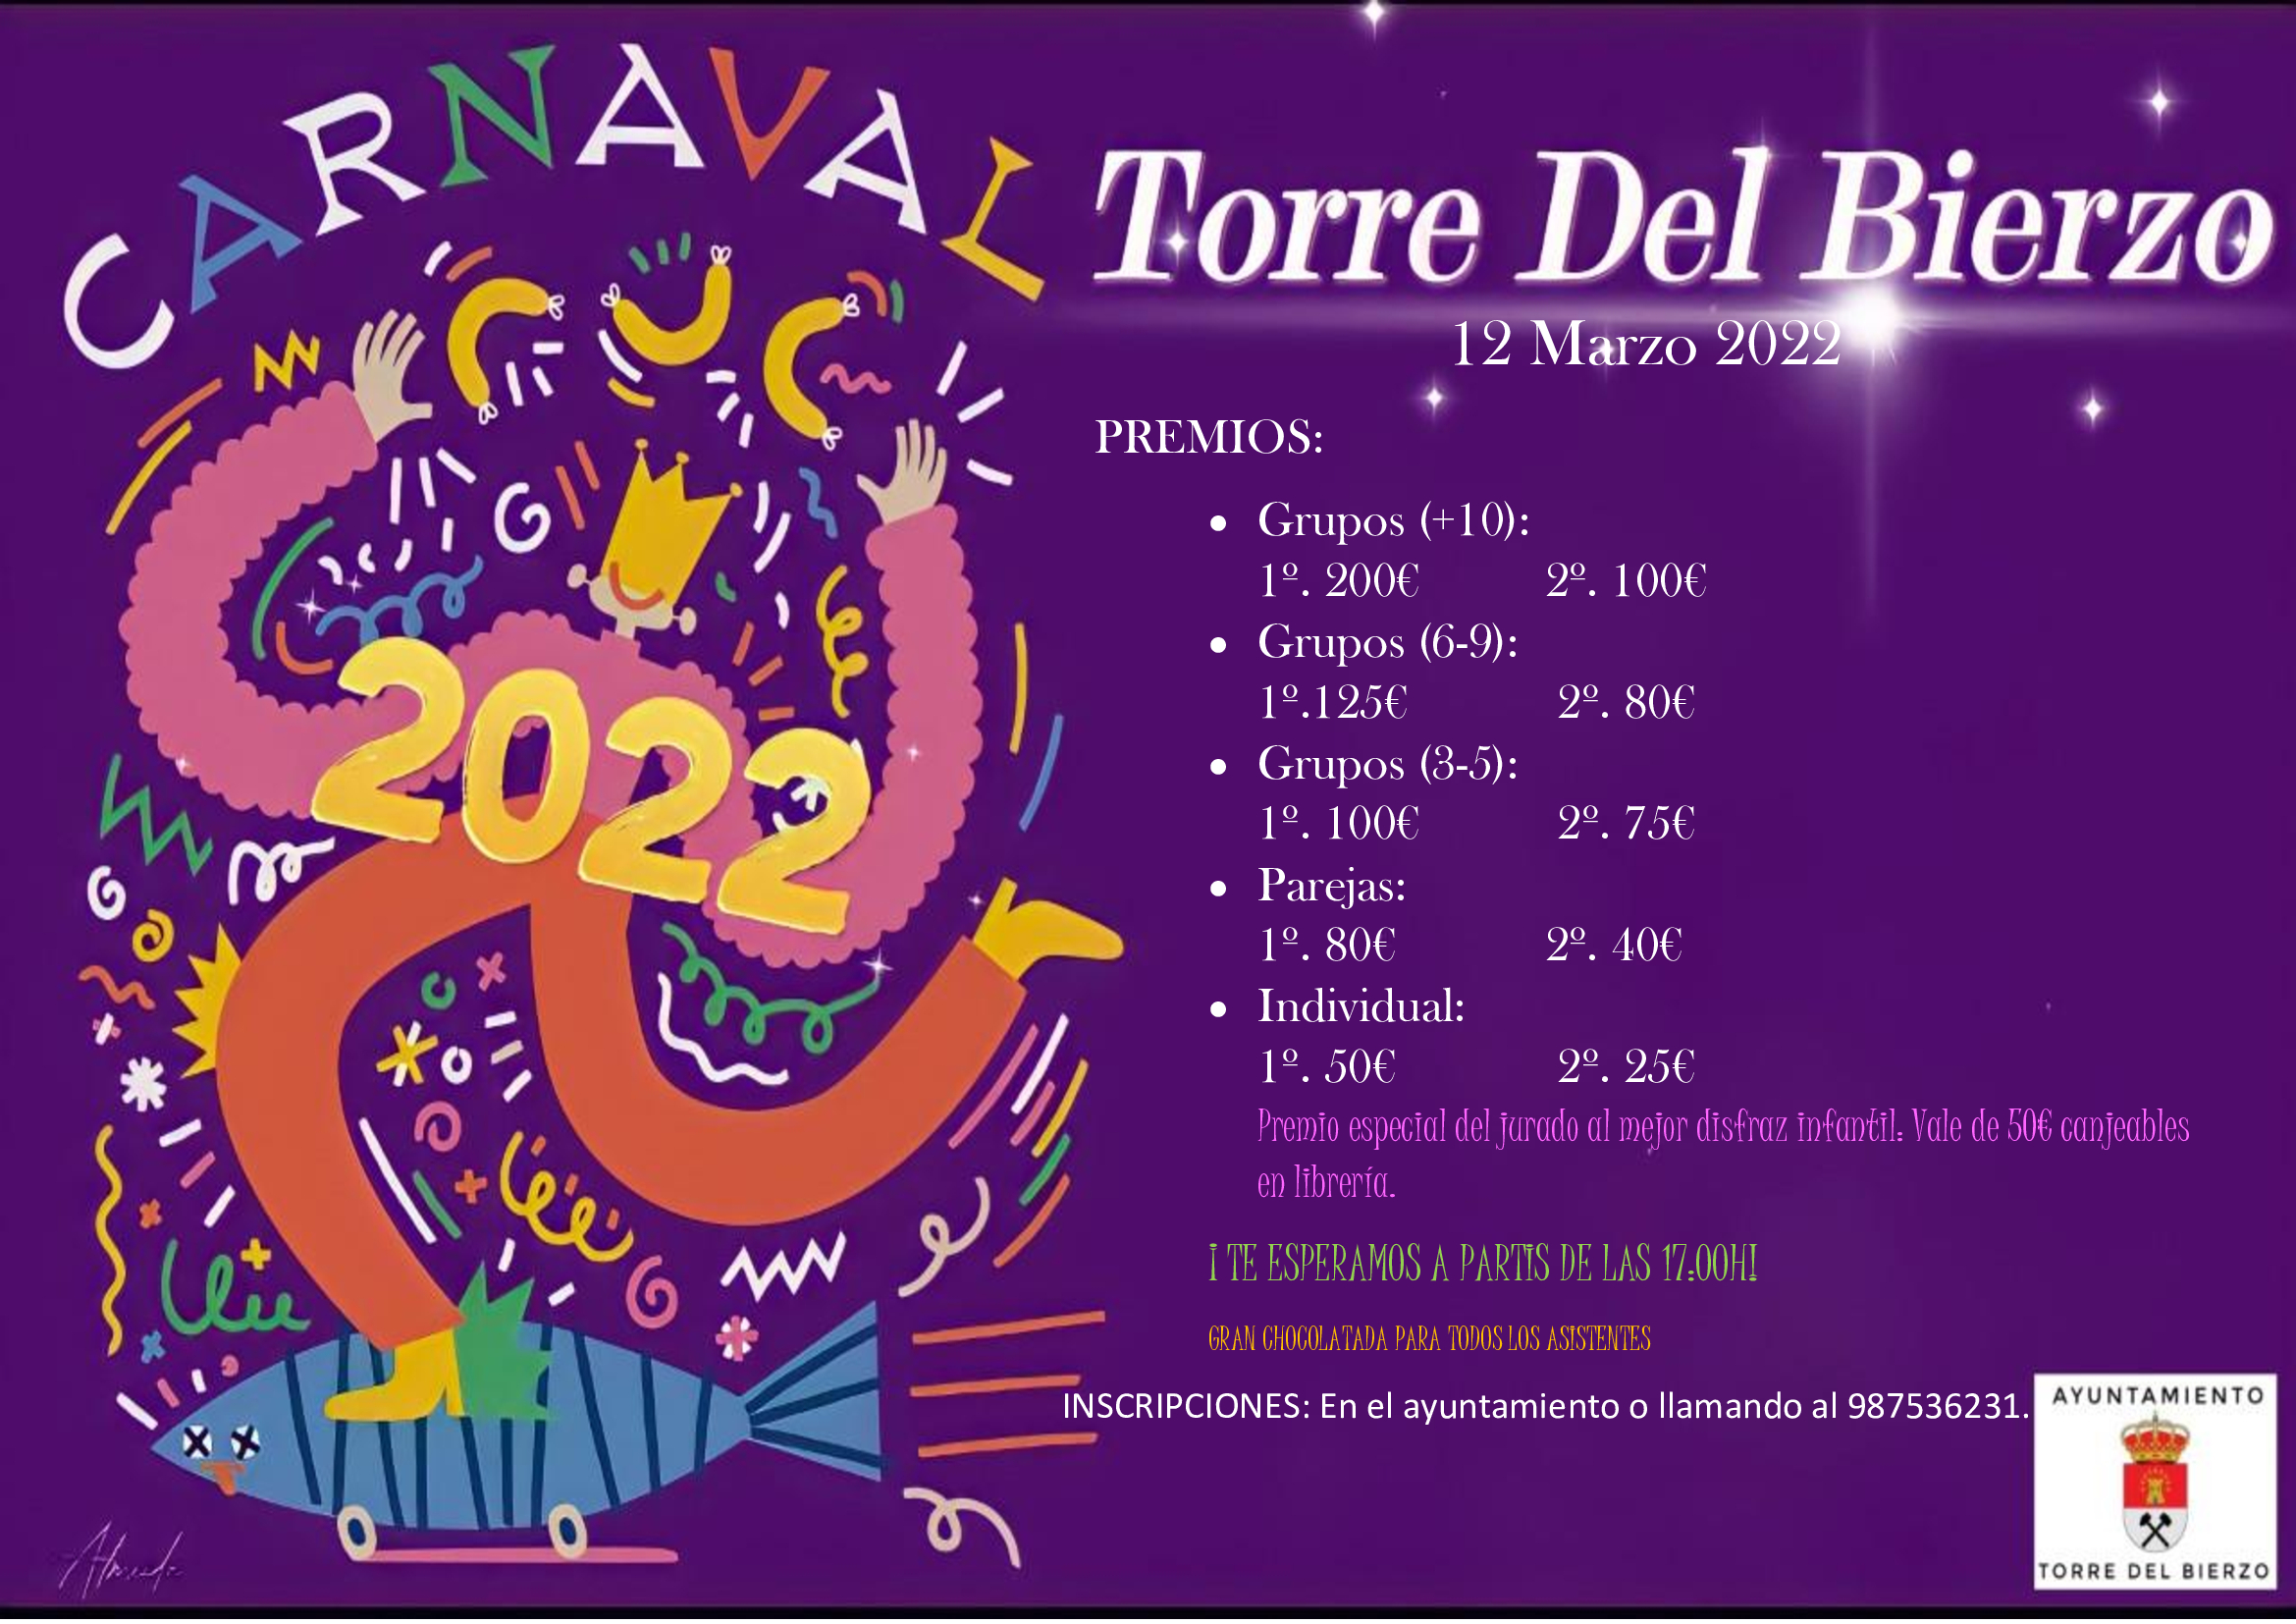 Carnaval en Torre del Bierzo 2022. La localidad del Bierzo Alto disfrutará del desfile el 12 de marzo 2